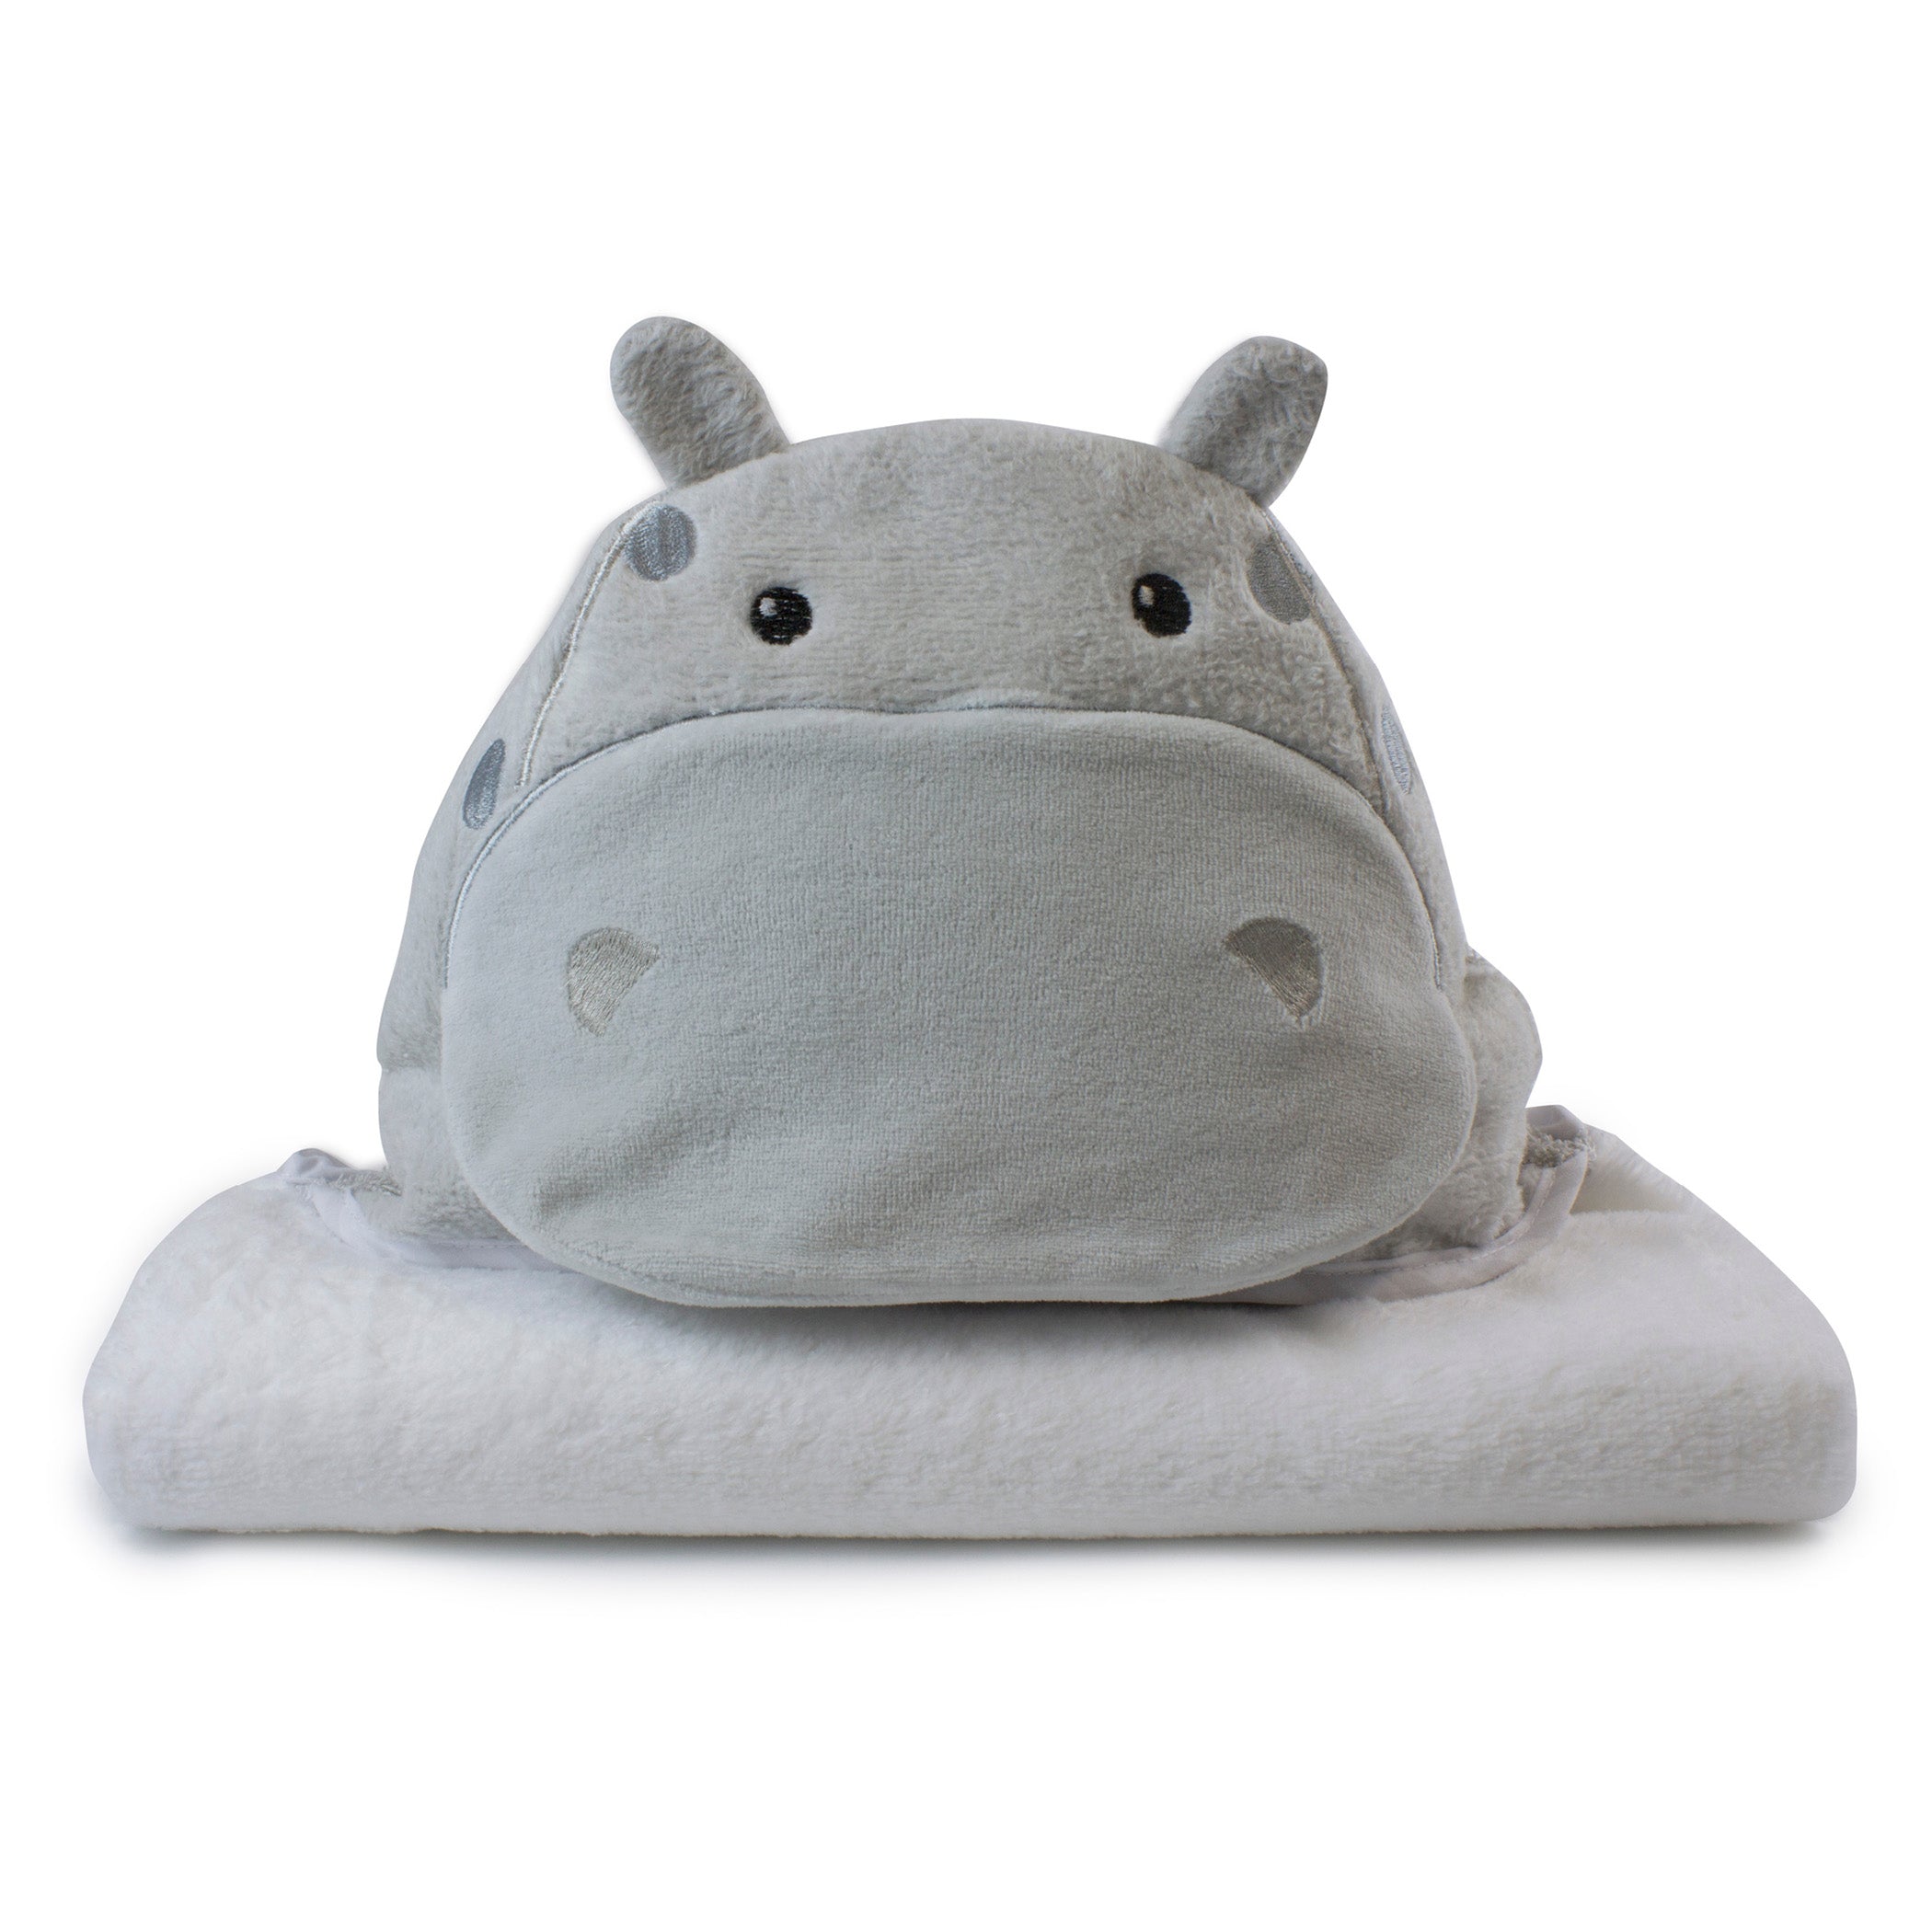 Zoo Animals 'Hippo' Novelty Hooded Bath Towel - Bubba Blue Australia